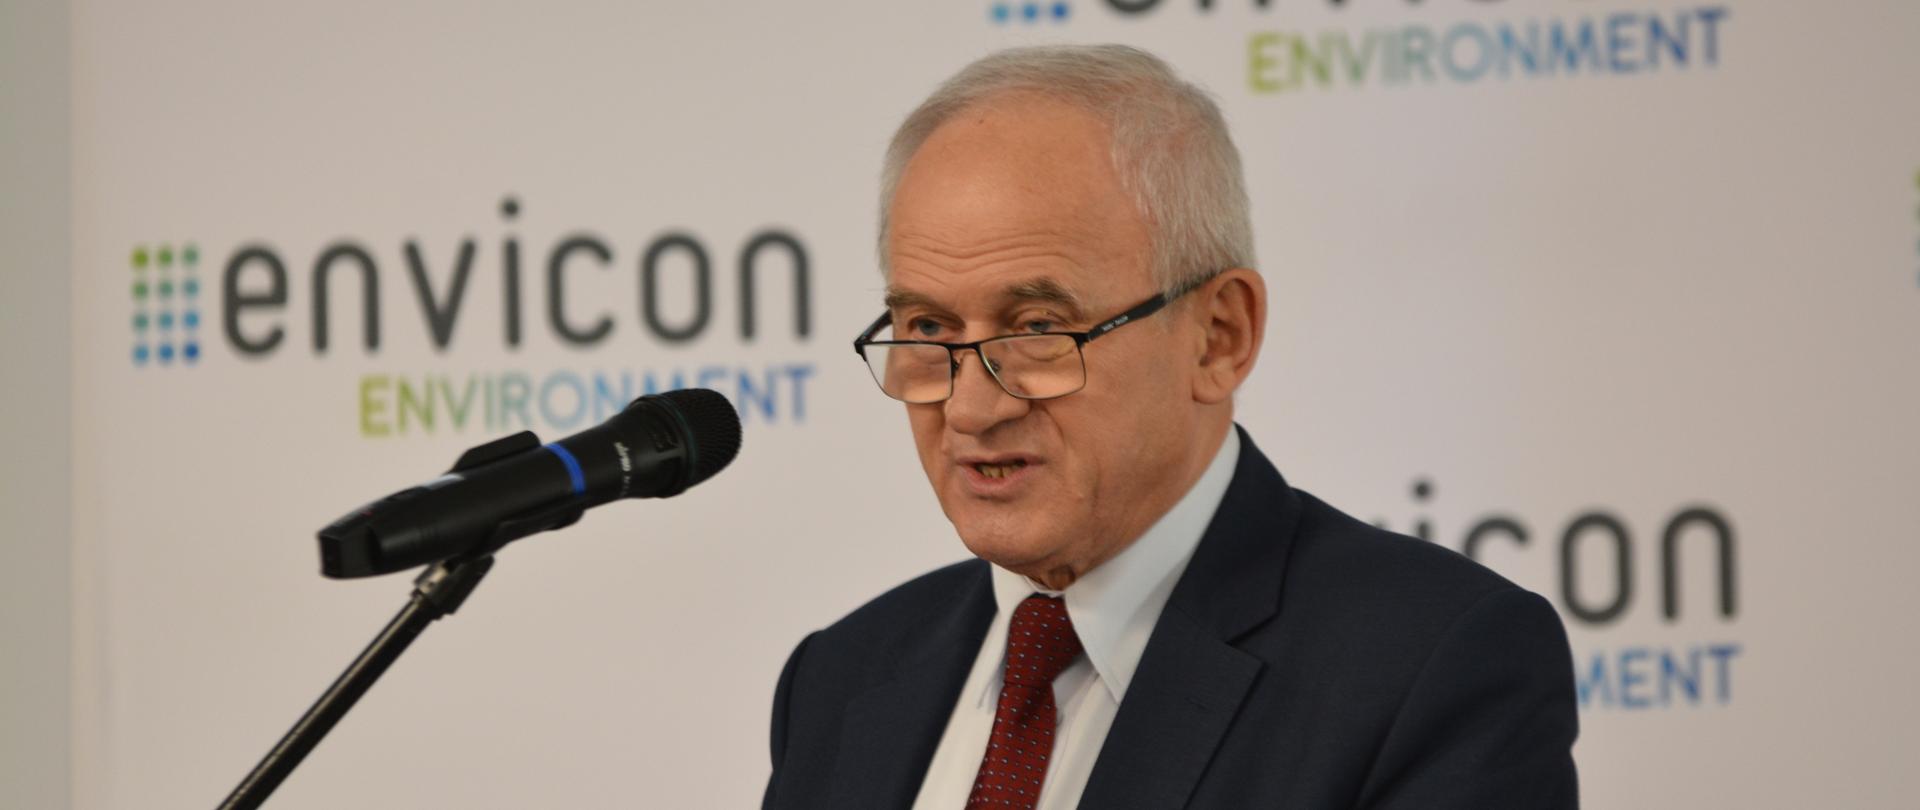 Minister Krzysztof Tchórzewski na kongresie Envicon Environment